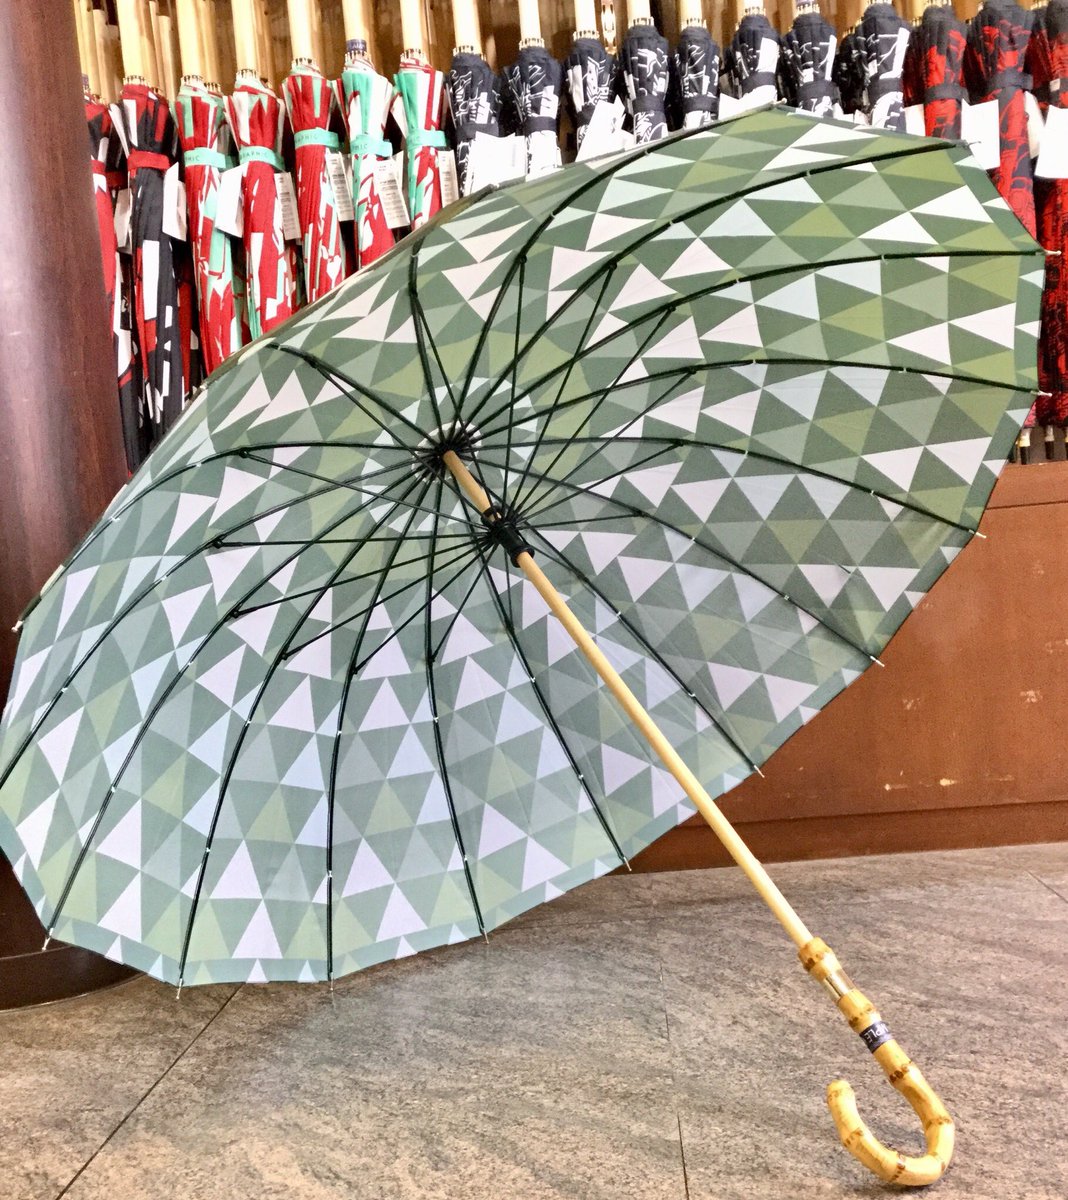 Wargo店舗販売スタッフ V Twitter 倉敷美観地区北斎グラフィック こんにちは 岡山の お土産 といえば むらすずめ や きびだんご でしょうか お菓子もいいですが 倉敷らしい 和柄 の丈夫な 傘 もオススメですよー 粋でカッコいいオリジナルの傘が約